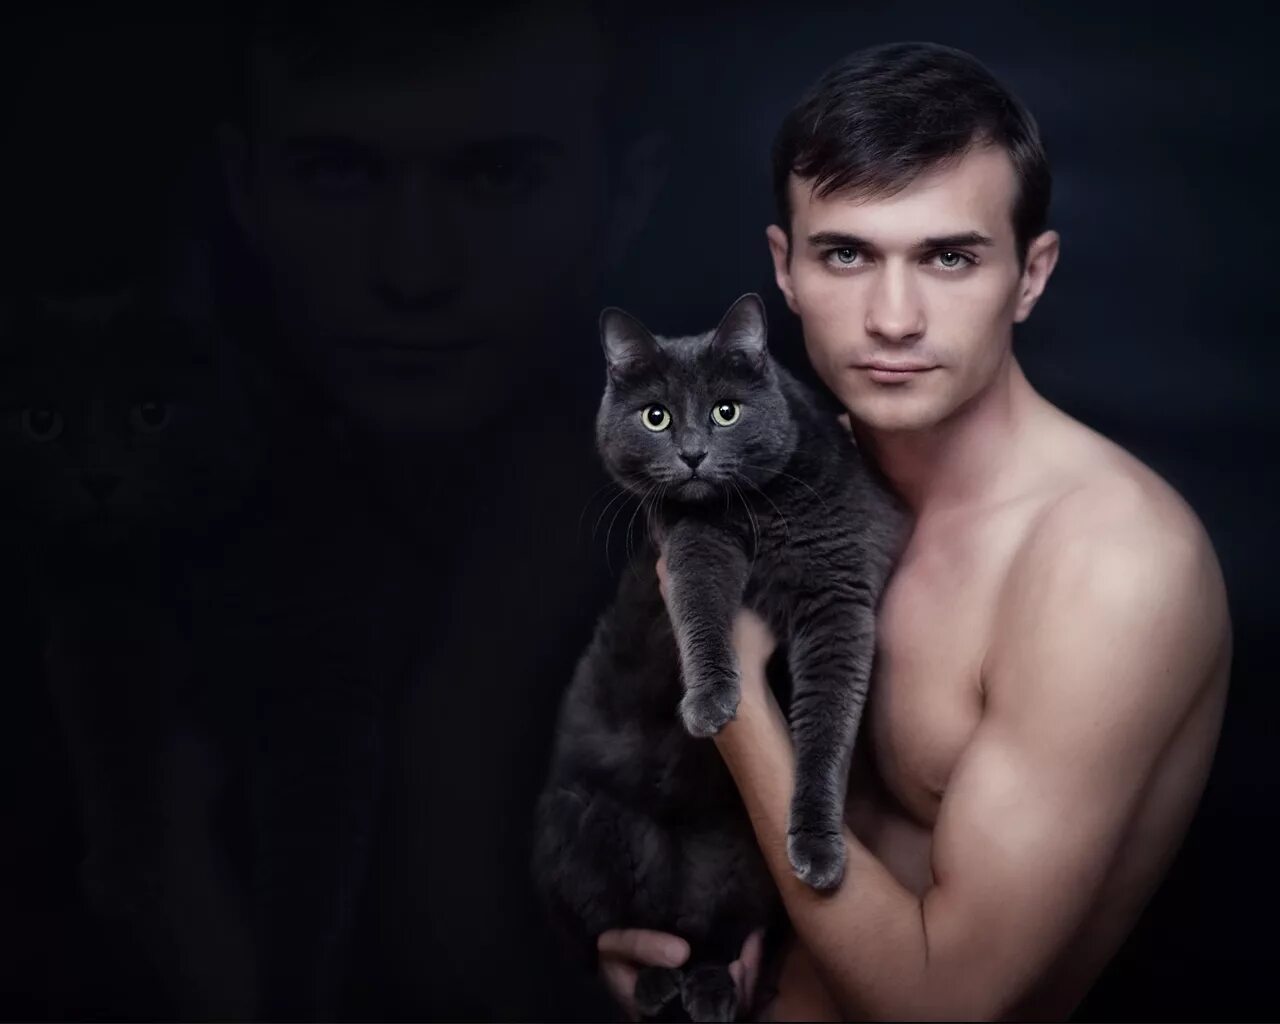 Включи кот пацан. Парень с кошкой. Красивый парень с котом. Мужчина с котиком. Фотосессия с котом.